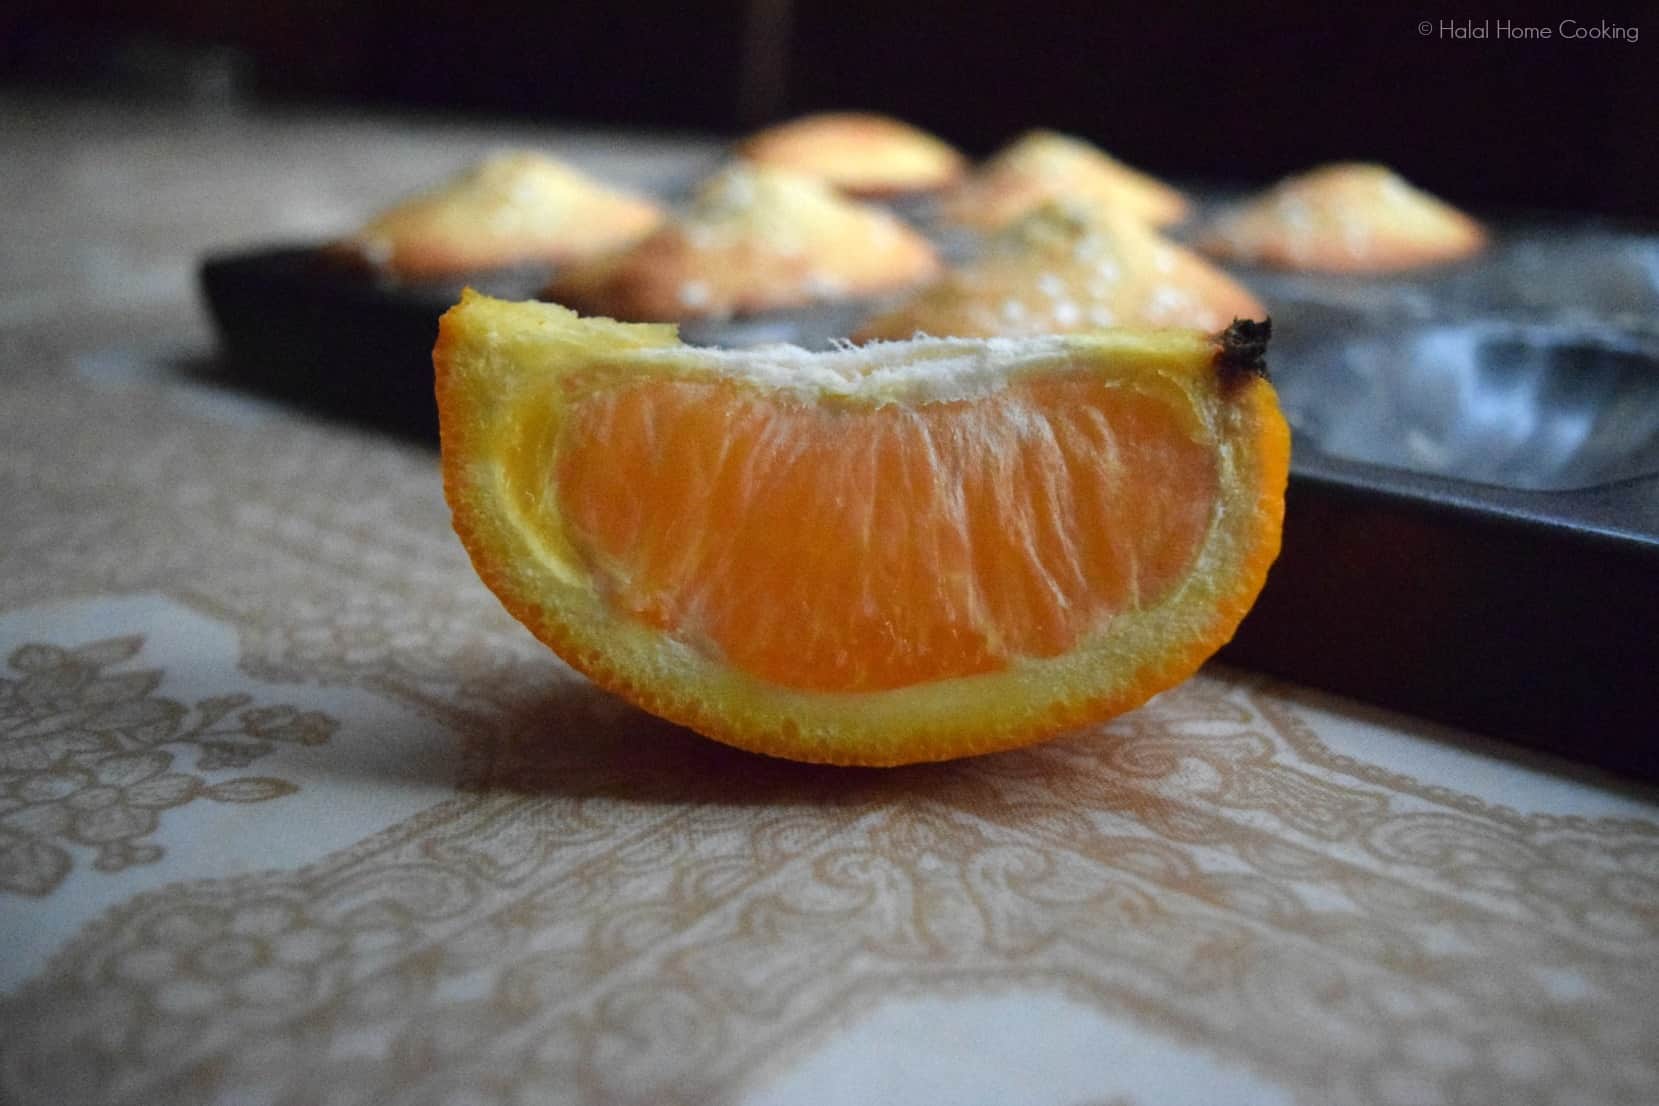 orange-slice